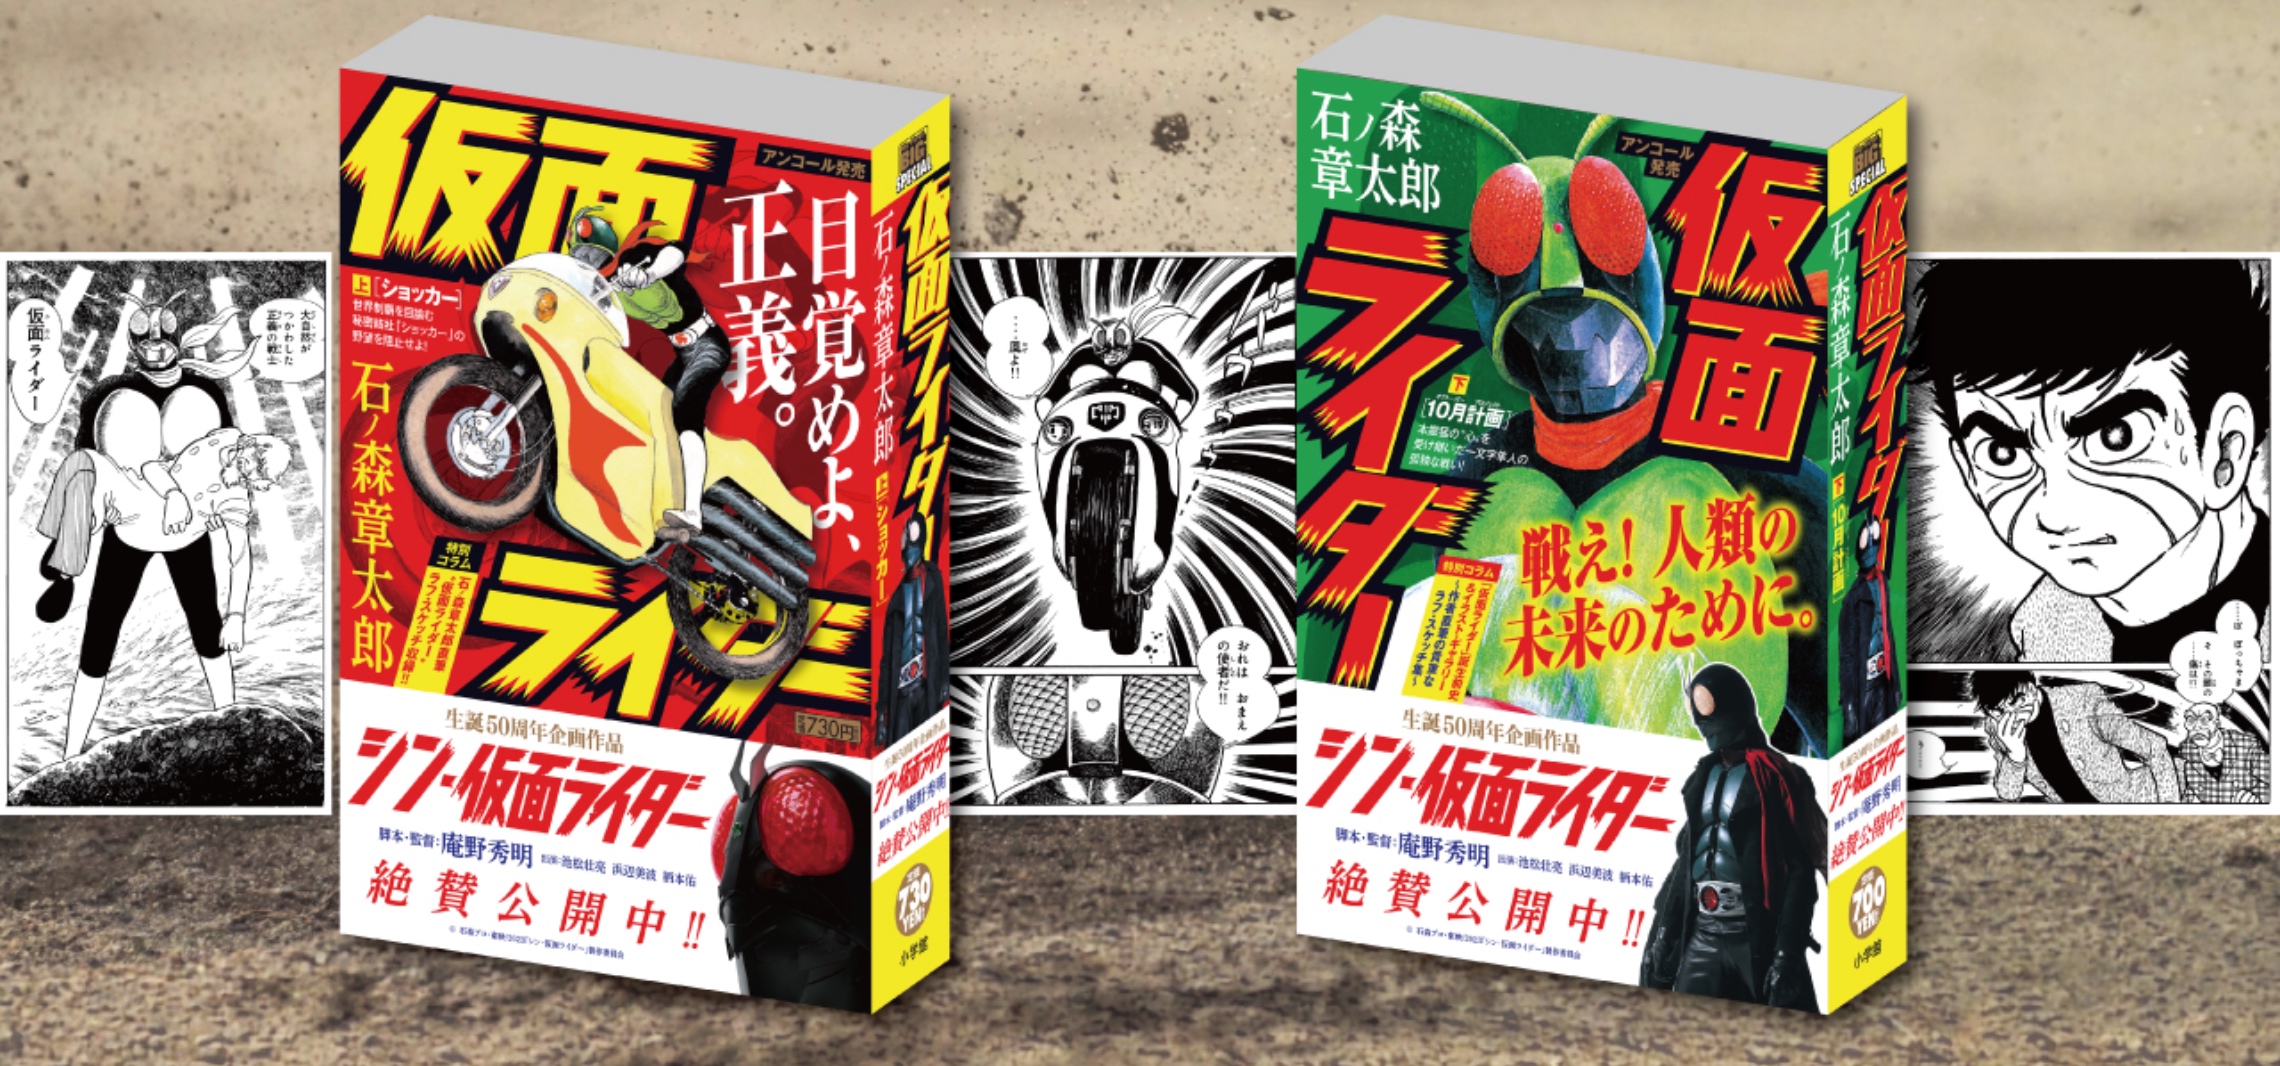 『シン・仮面ライダー』公開記念表紙のMFB『仮面ライダー』が4/14(金)よりアンコール発売。